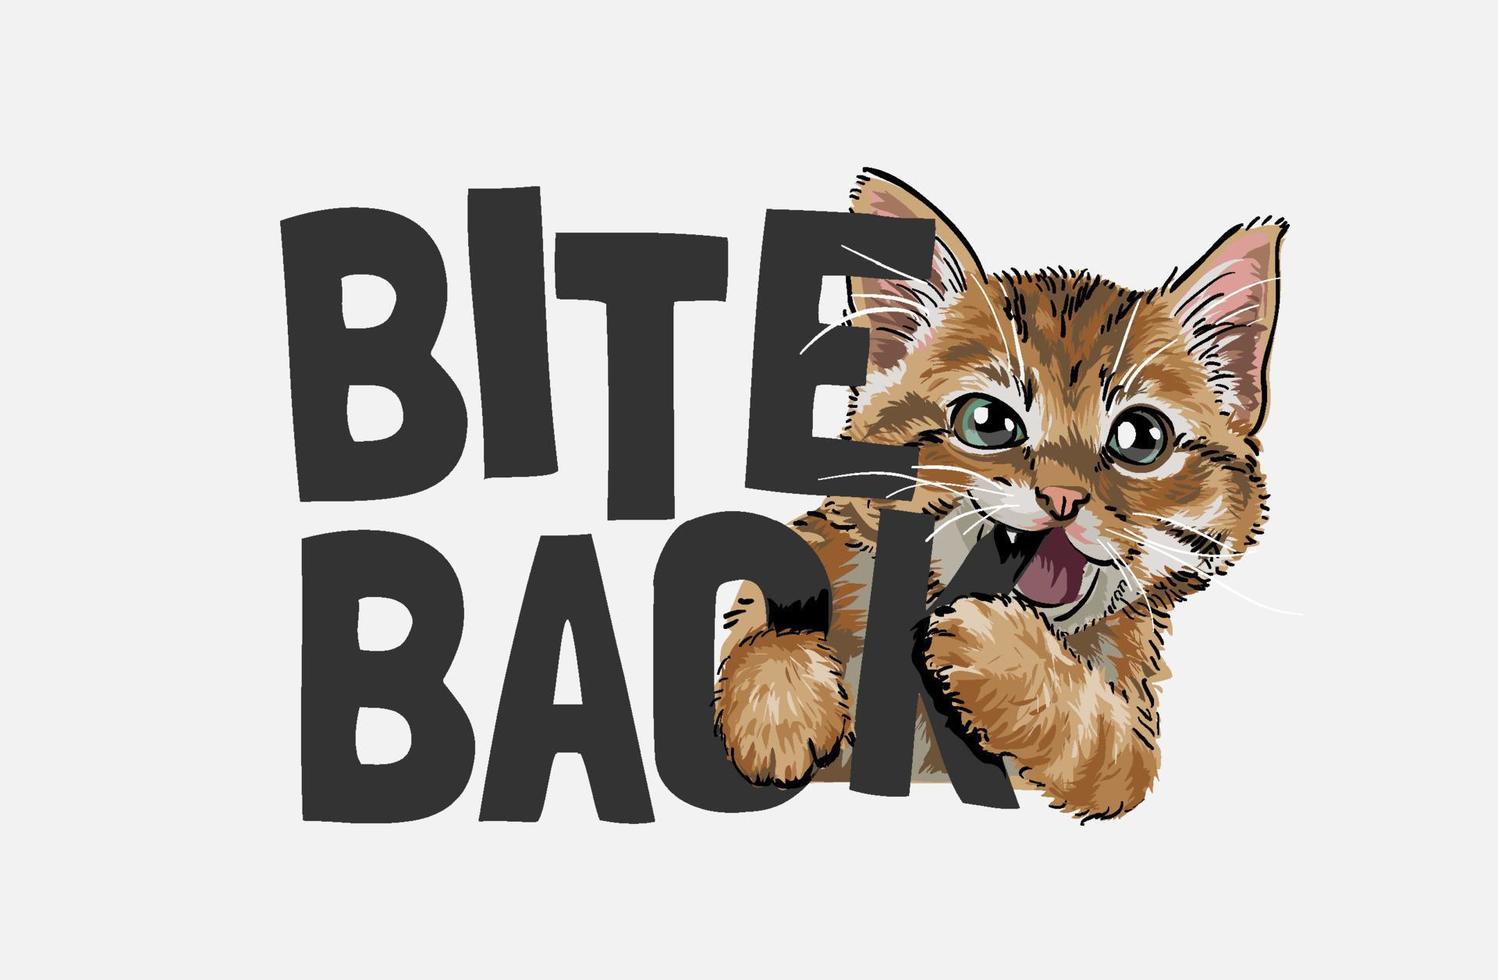 süße katze beißt beißen zurück slogan illustration vektor